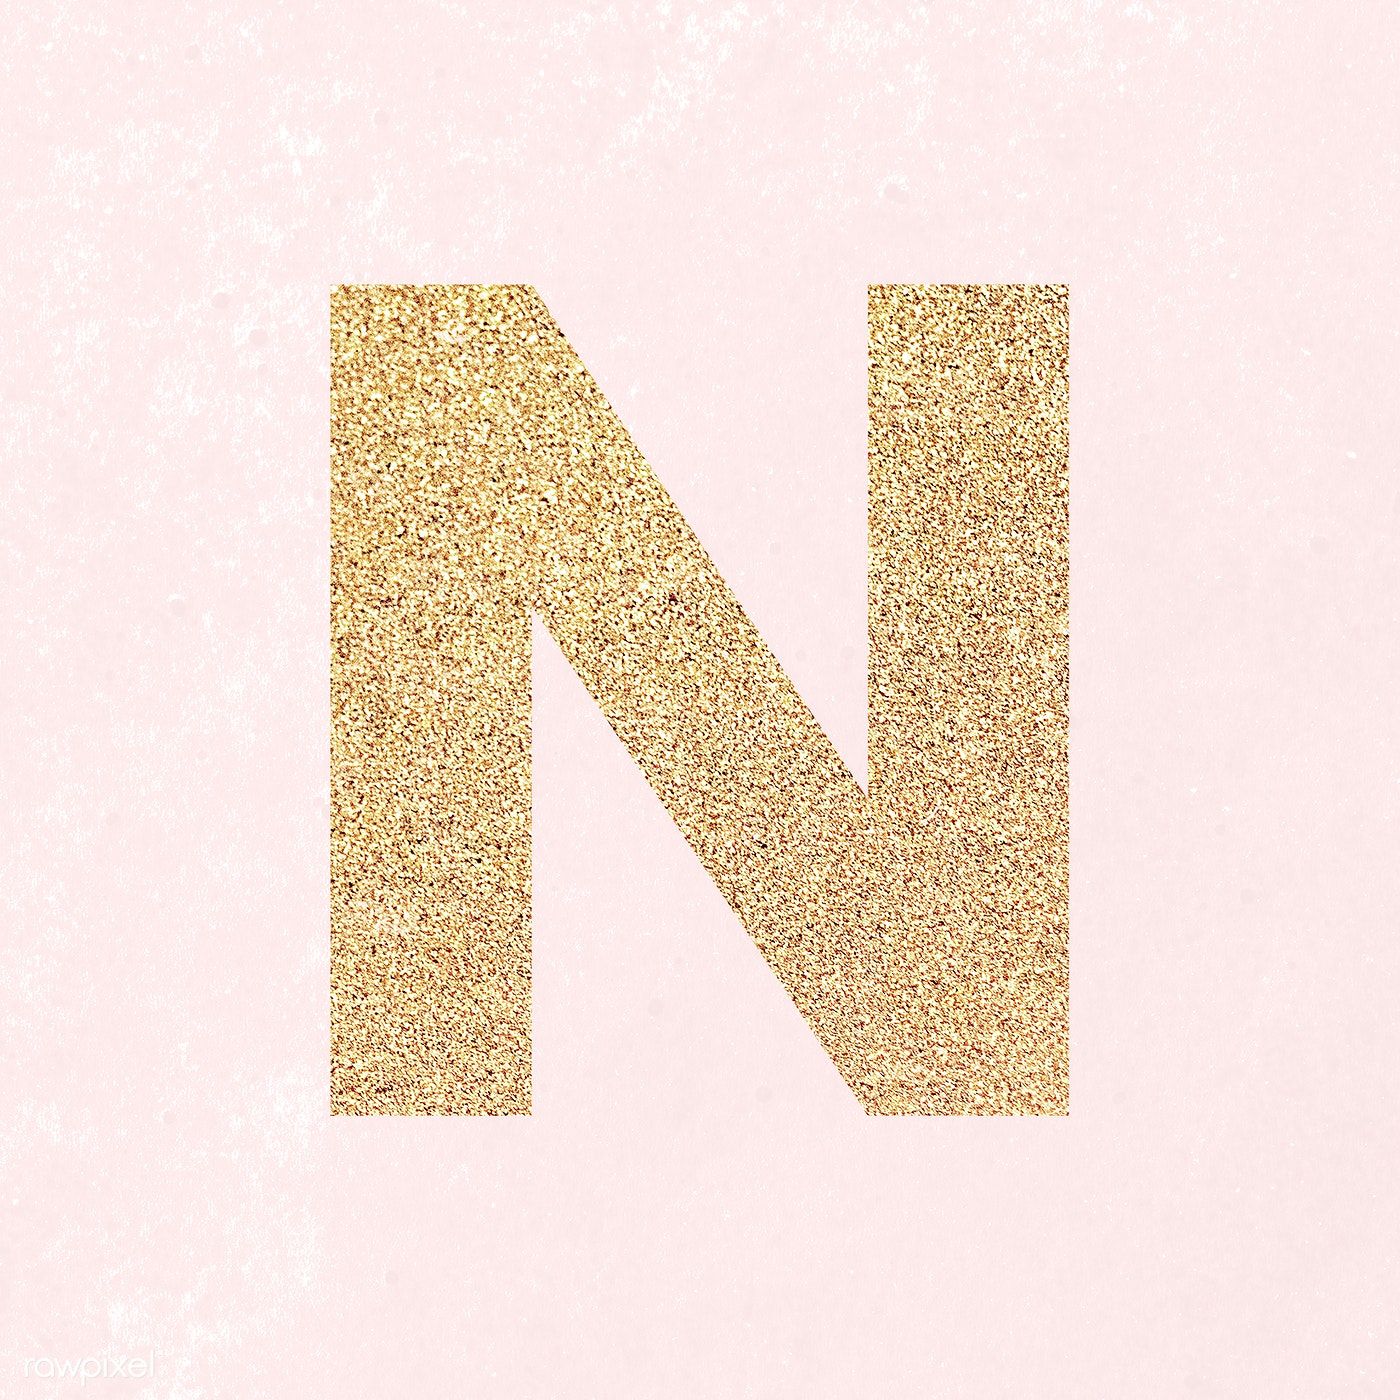 Glitter capital letter N sticker illustration. free image / NingZk V. Lettering alphabet, Lettering, Letter stickers